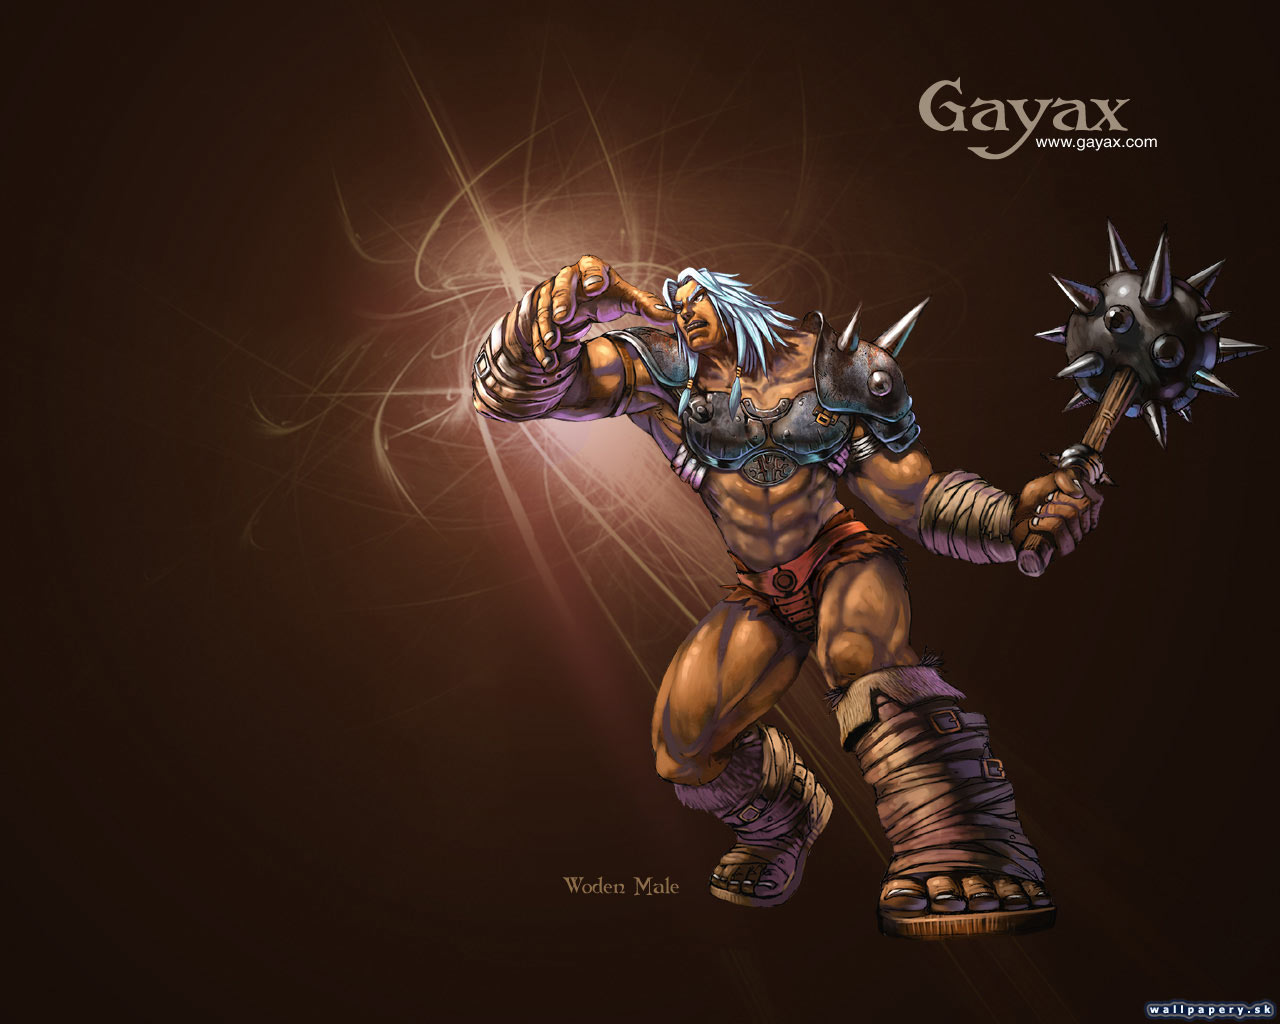 Gayax - wallpaper 11